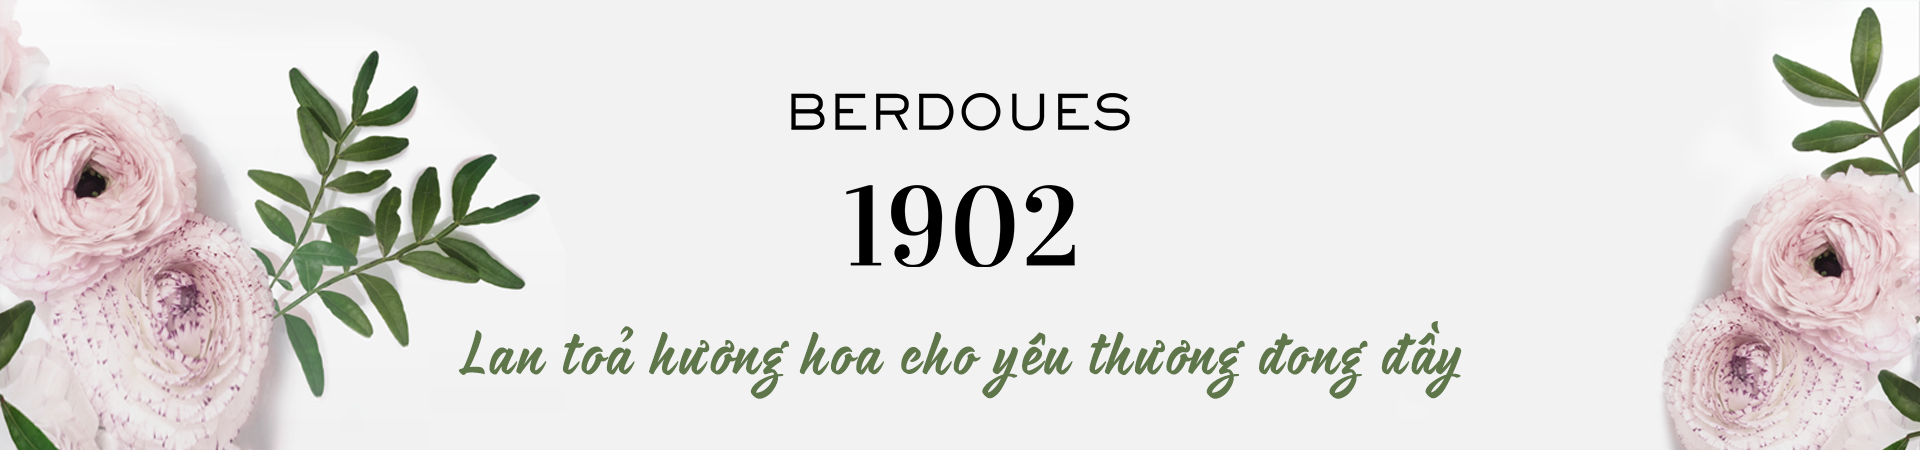 BERDOUES 1902